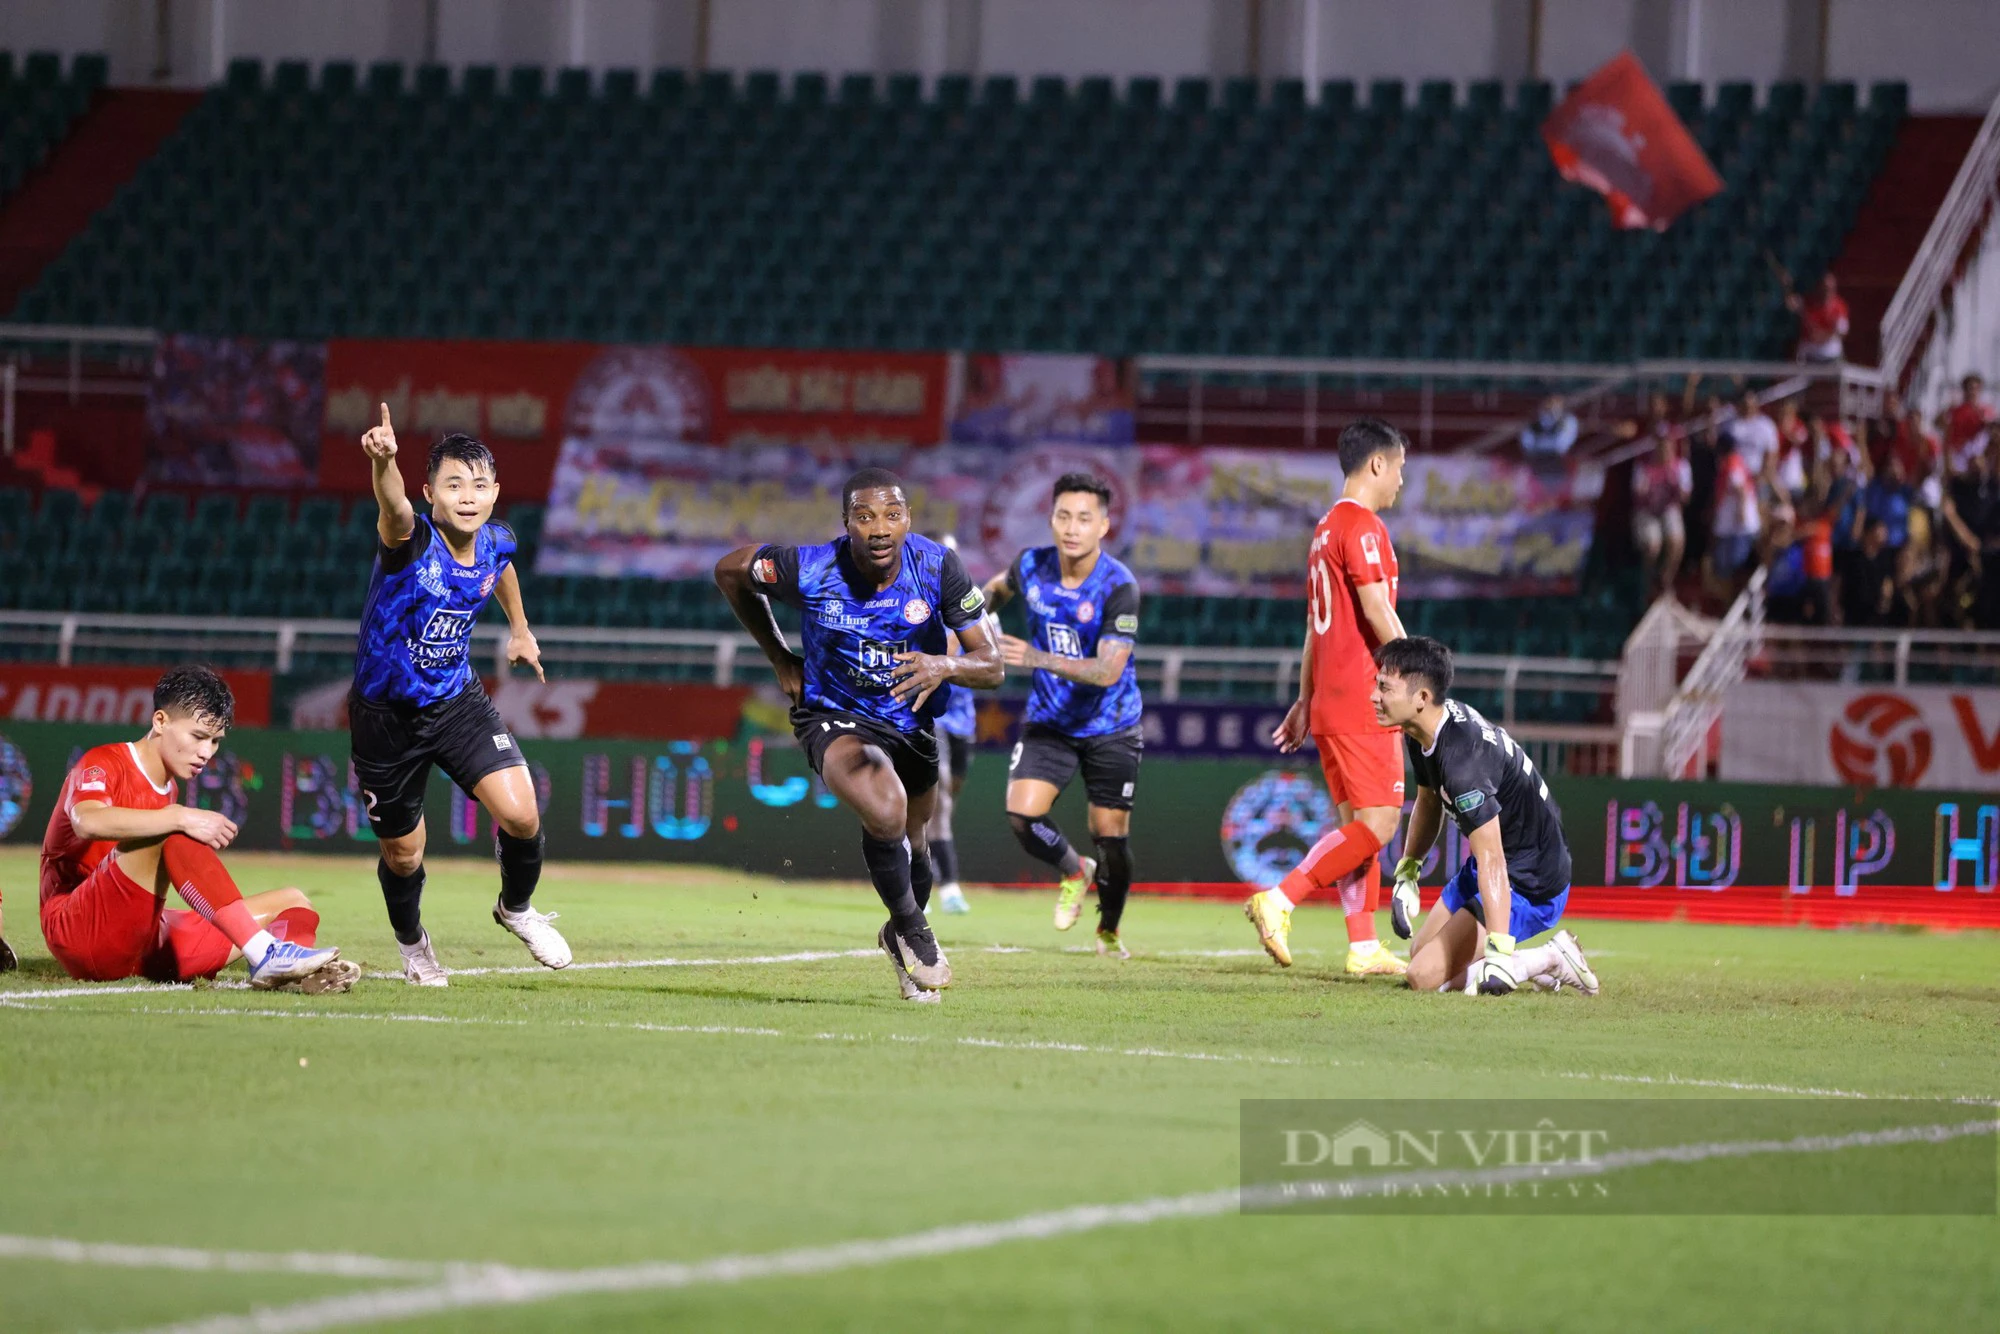 CLB TP.HCM vs Hà Tĩnh (19h15 ngày 26/12): Chờ mở hội trên sân Thống Nhất - Ảnh 1.